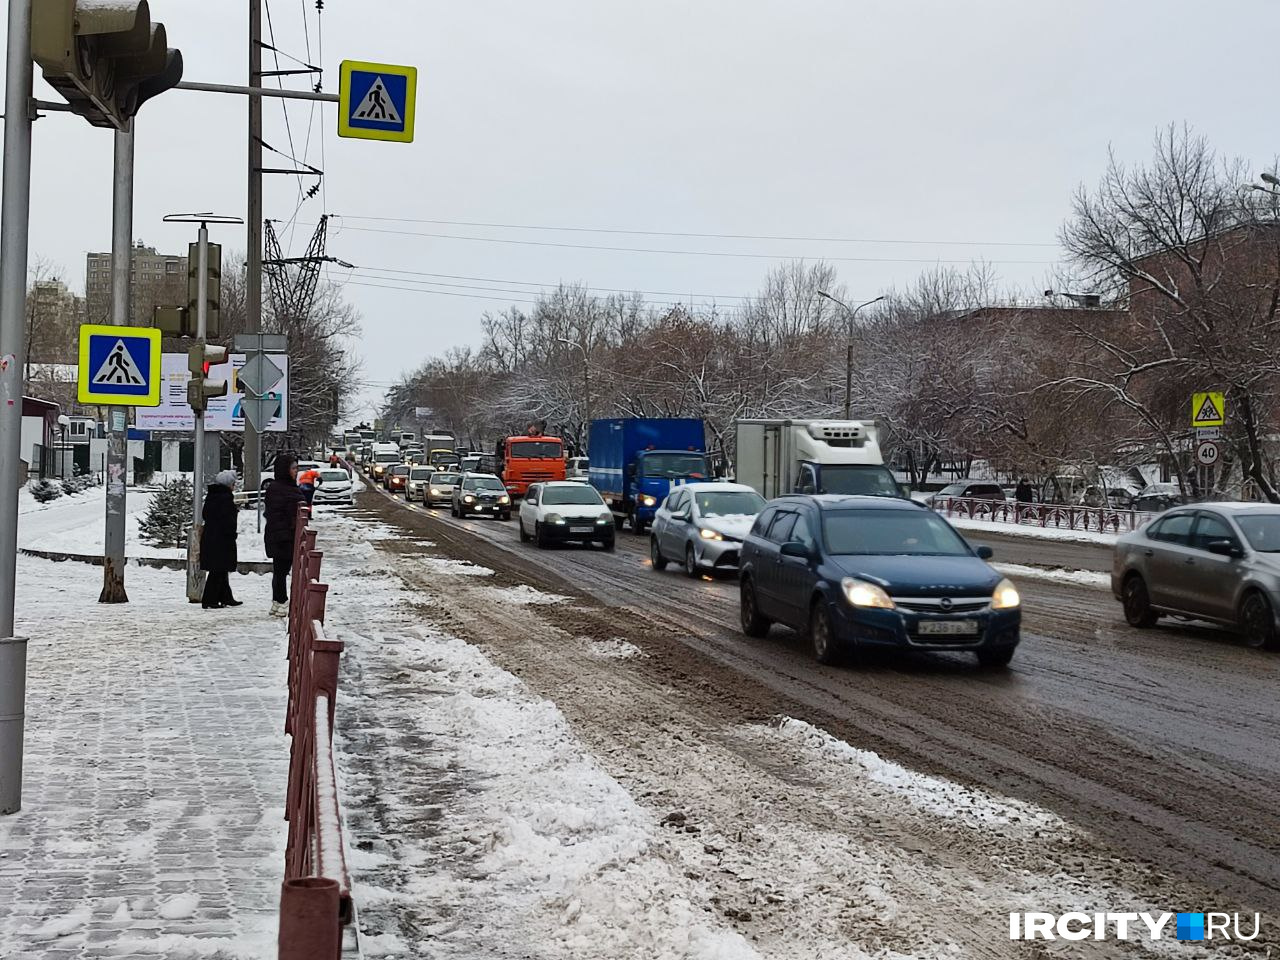 20% от ноябрьской нормы снега выпало в Иркутске 8 ноября